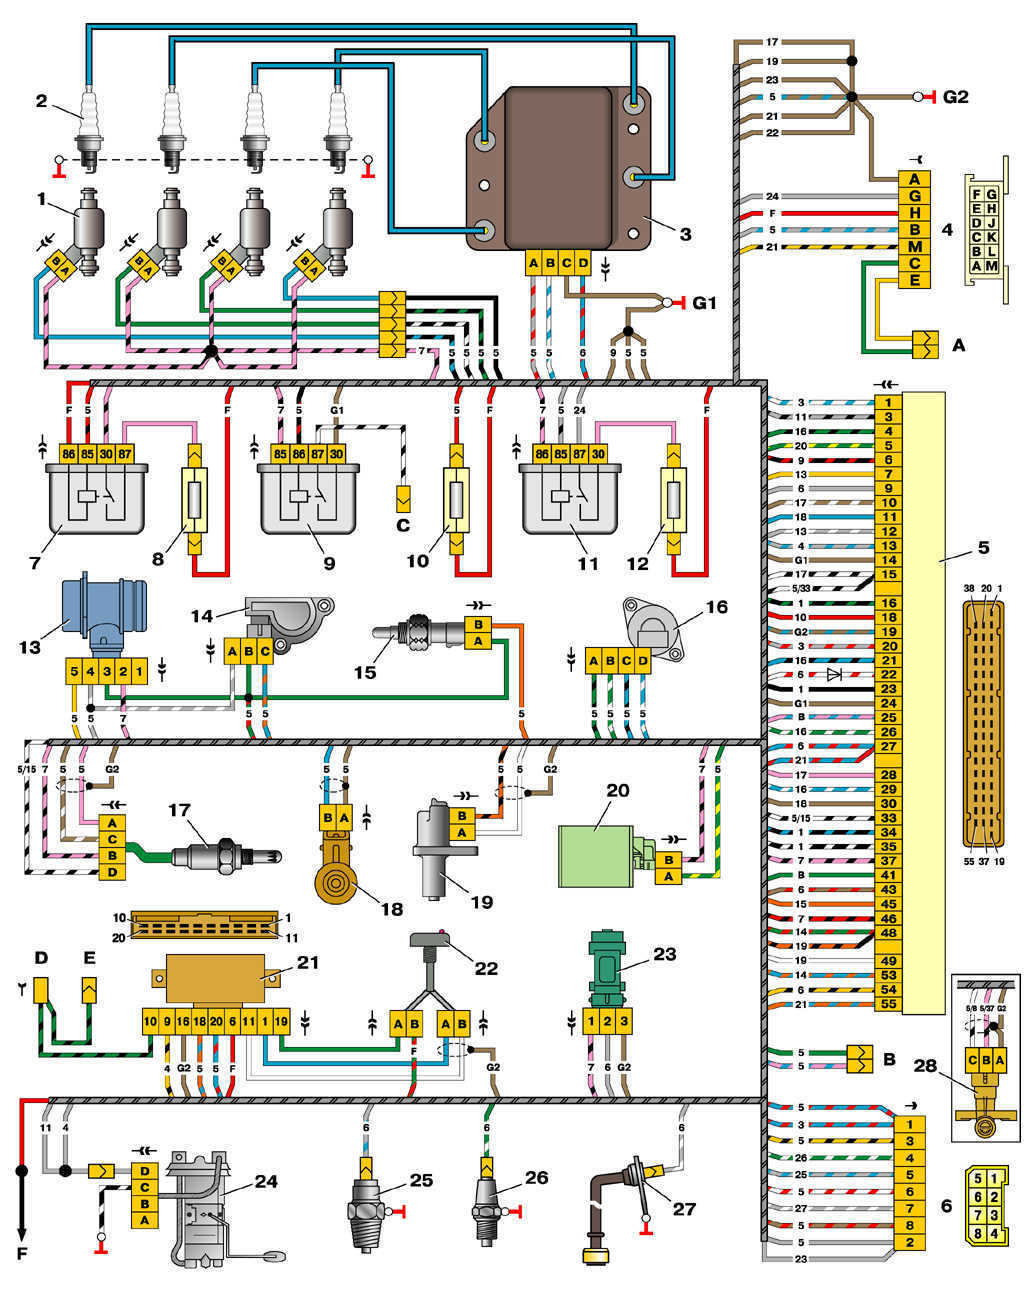  Схема управления двигателями 2111 и 2112 (конт. М1.5.4N, «Январь-5.1») ВАЗ 2110